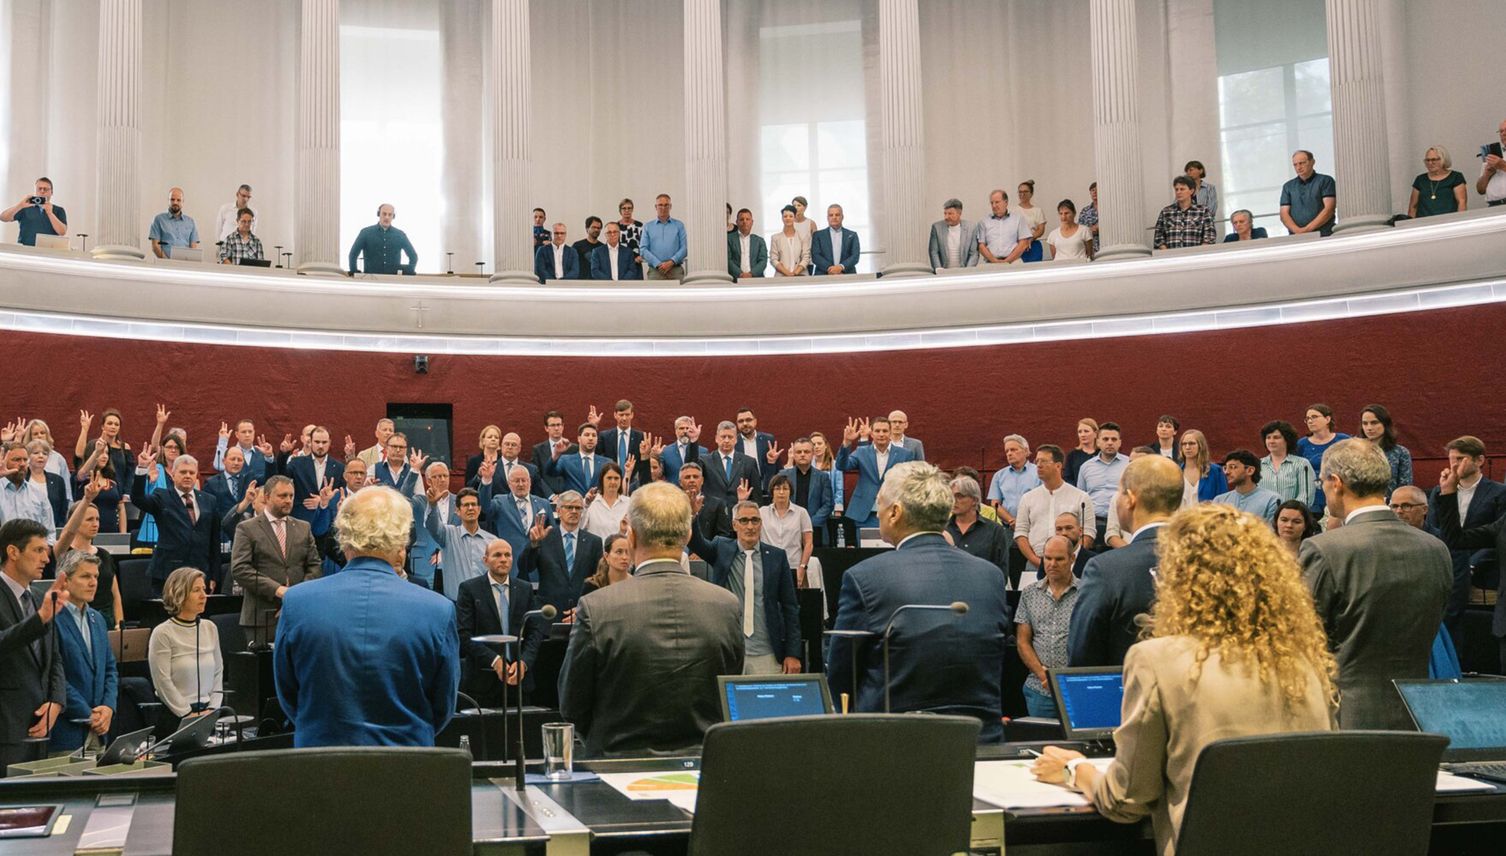 Weiblicher und jünger: Neue Dynamik im Luzerner Parlament